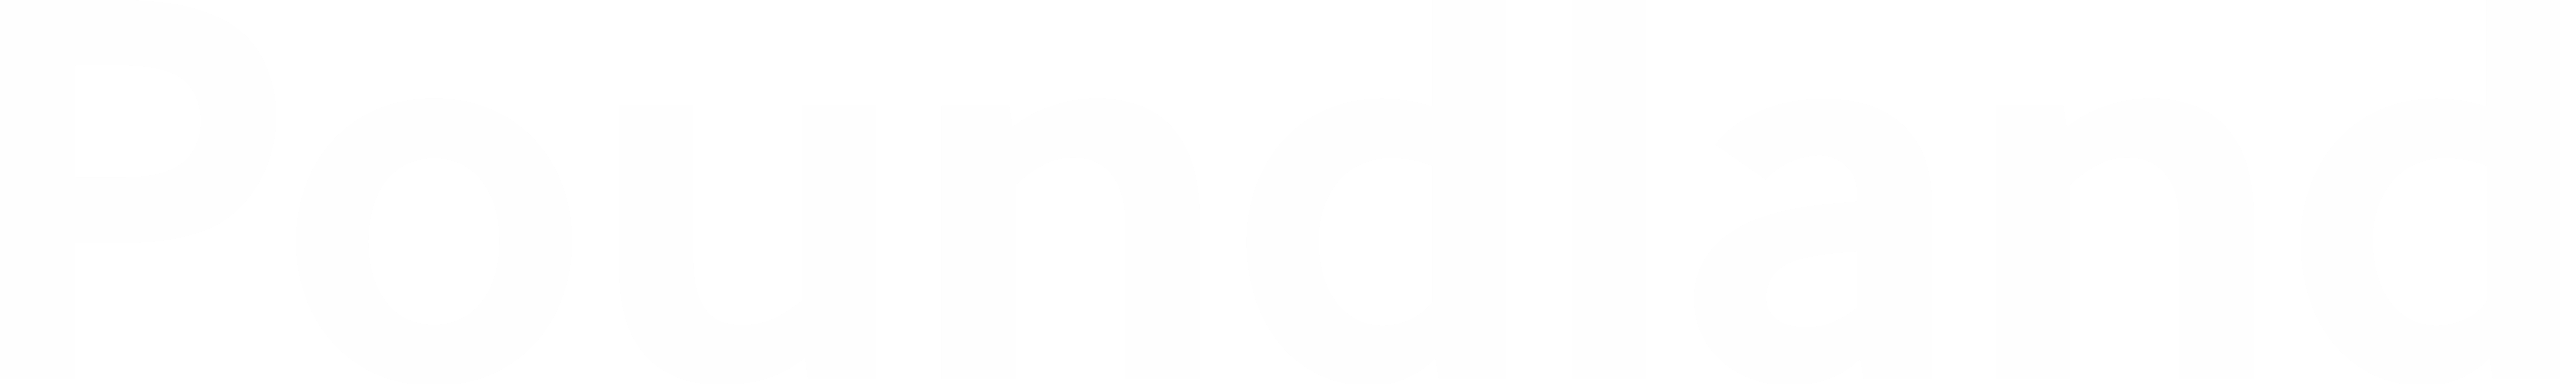 Poundland logo - PMO